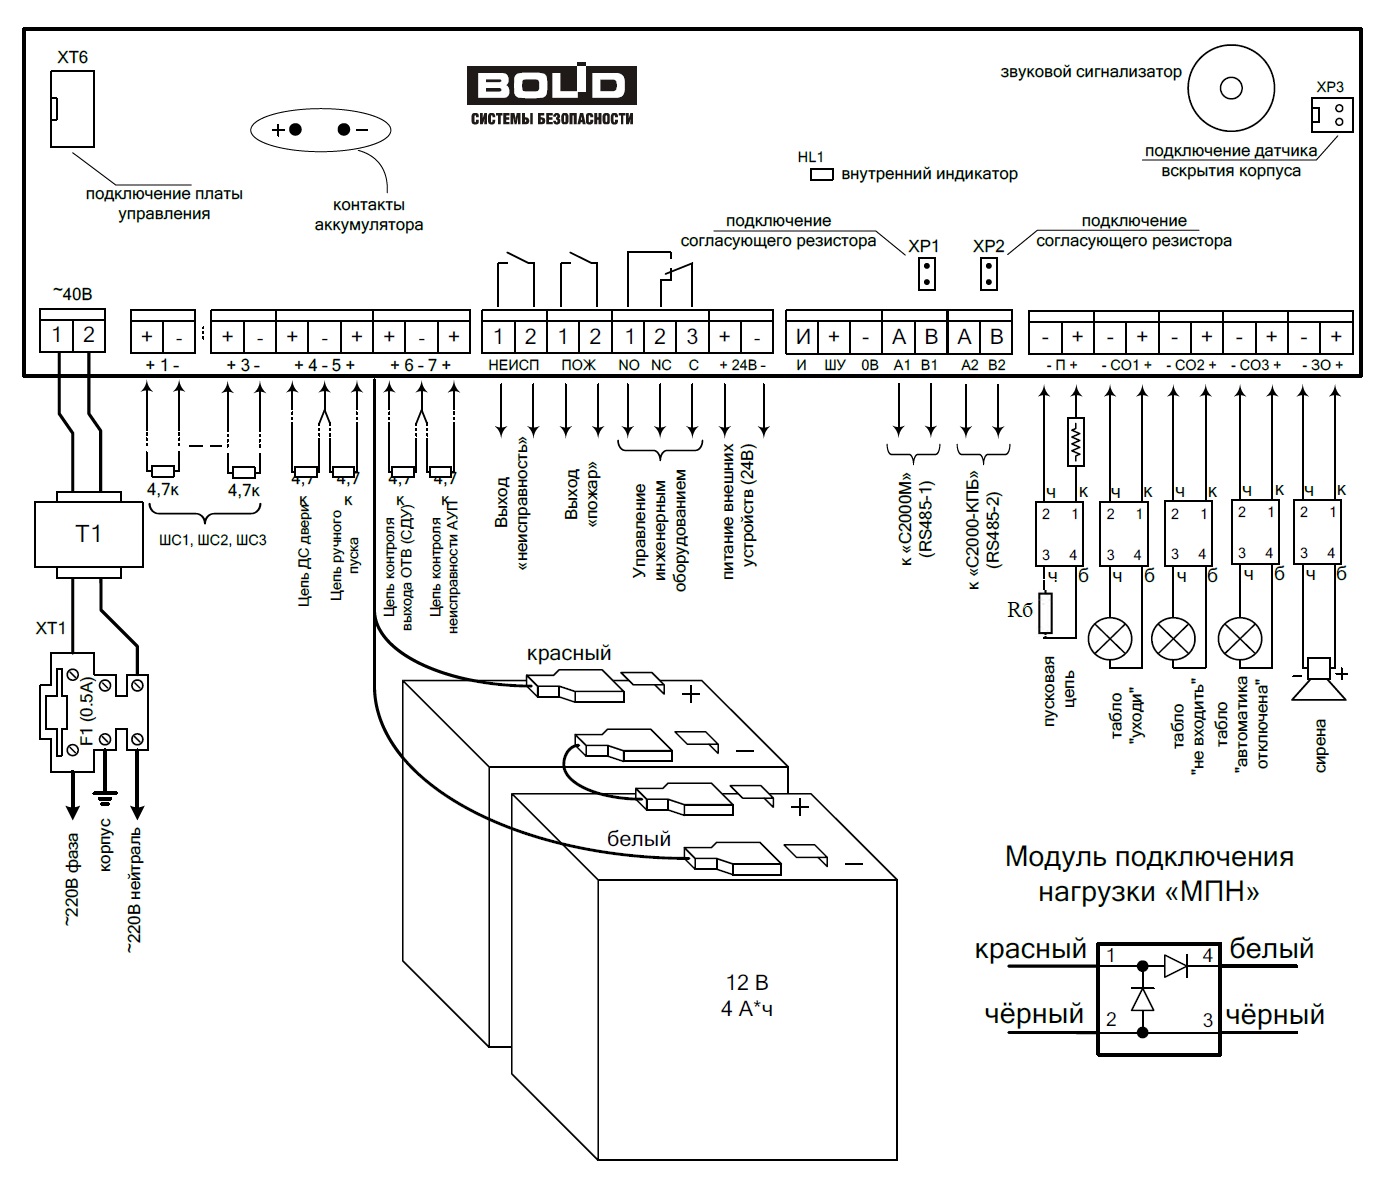 Схема подключения прибора С2000-АСПТ